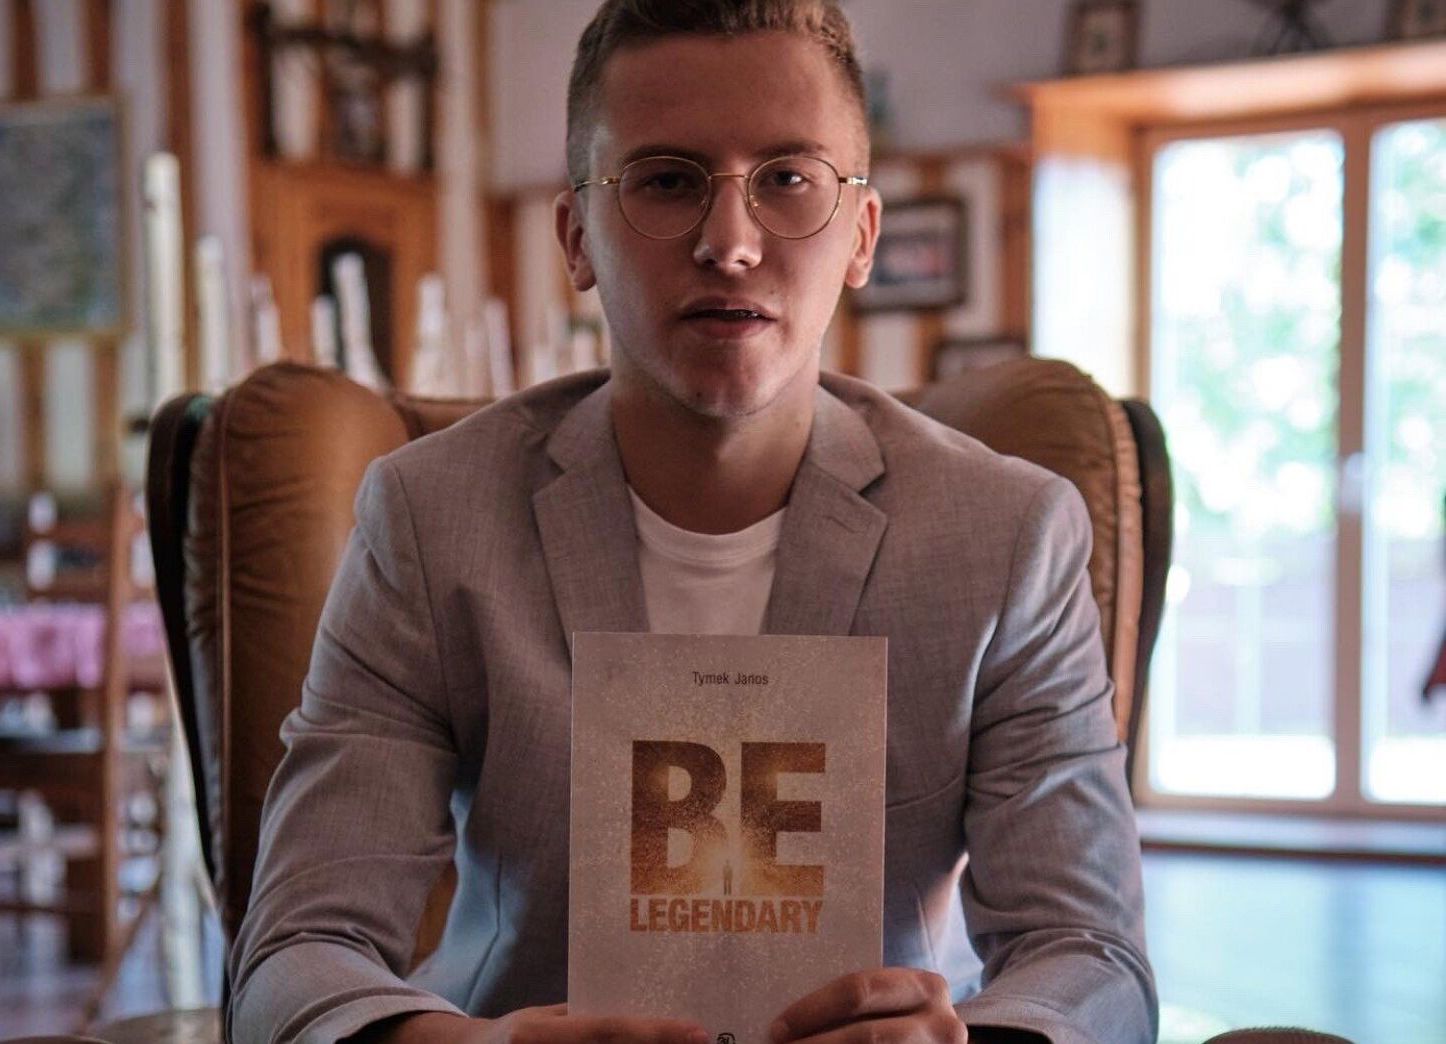 Publikacja, która ma inspirować młodych ludzi. Tymek Janos napisał książkę pt. "Be legendary" - Zdjęcie główne